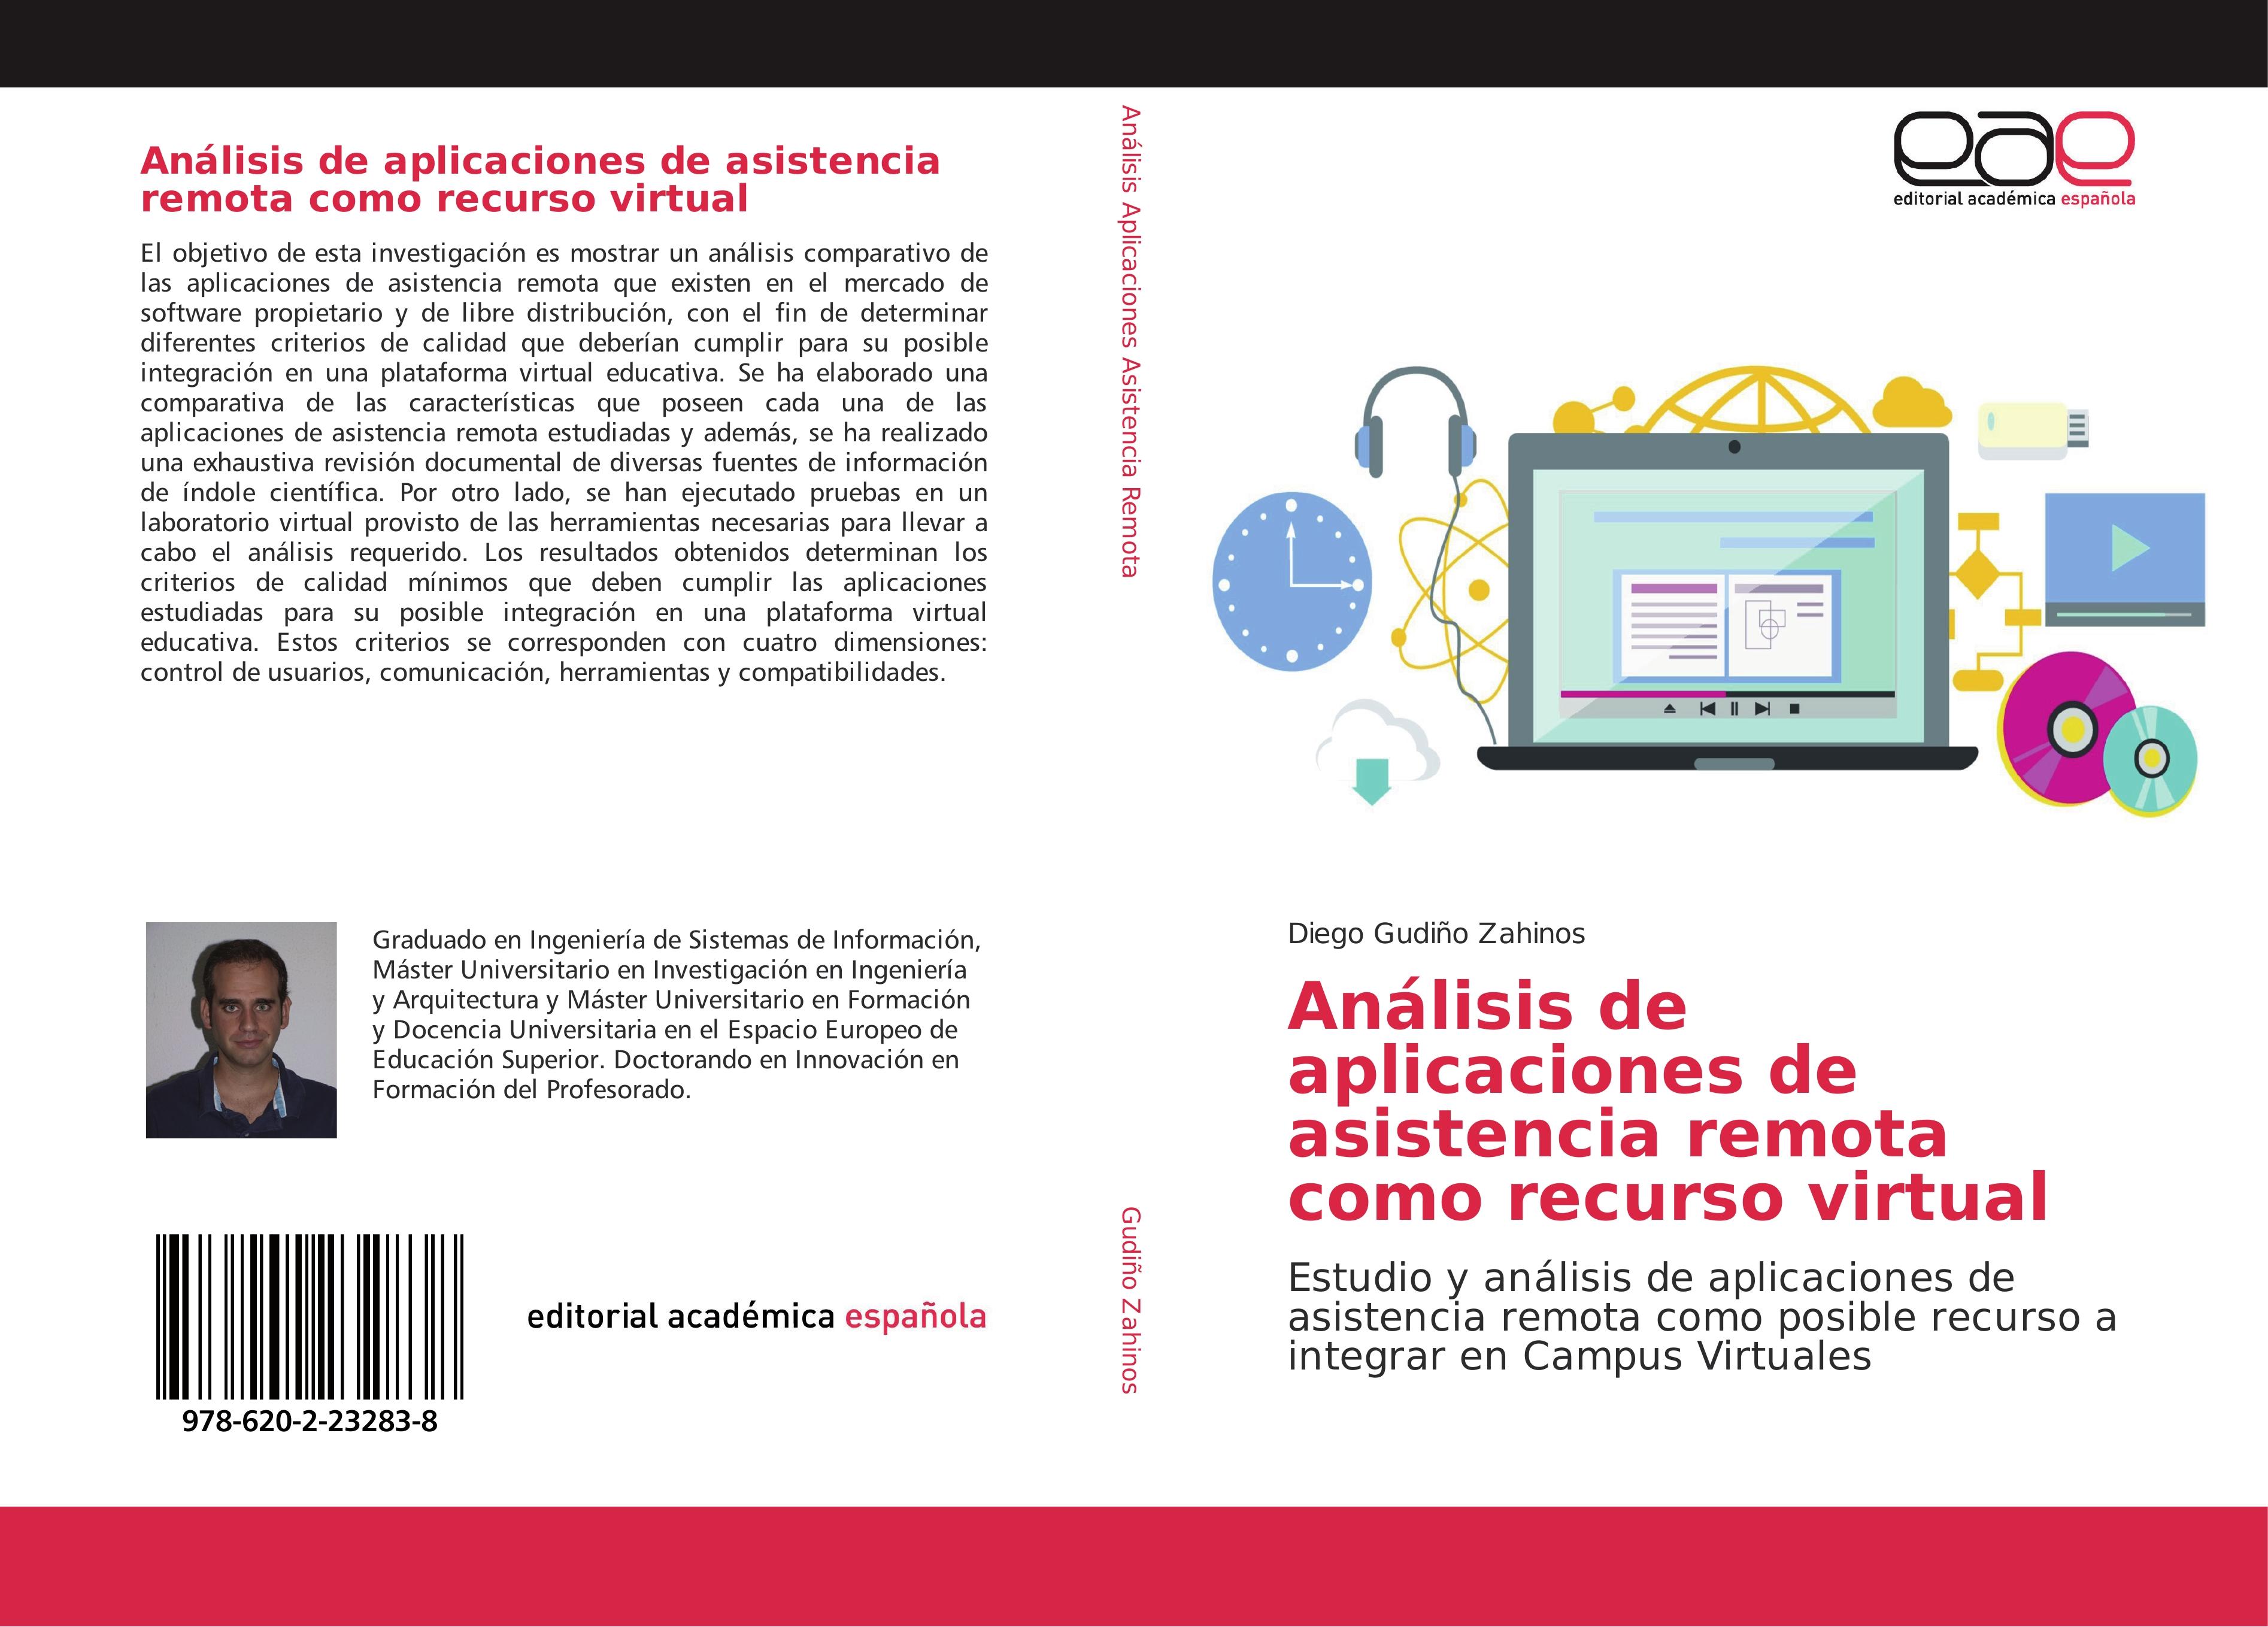 Análisis de aplicaciones de asistencia remota como recurso virtual - Diego Gudiño Zahinos